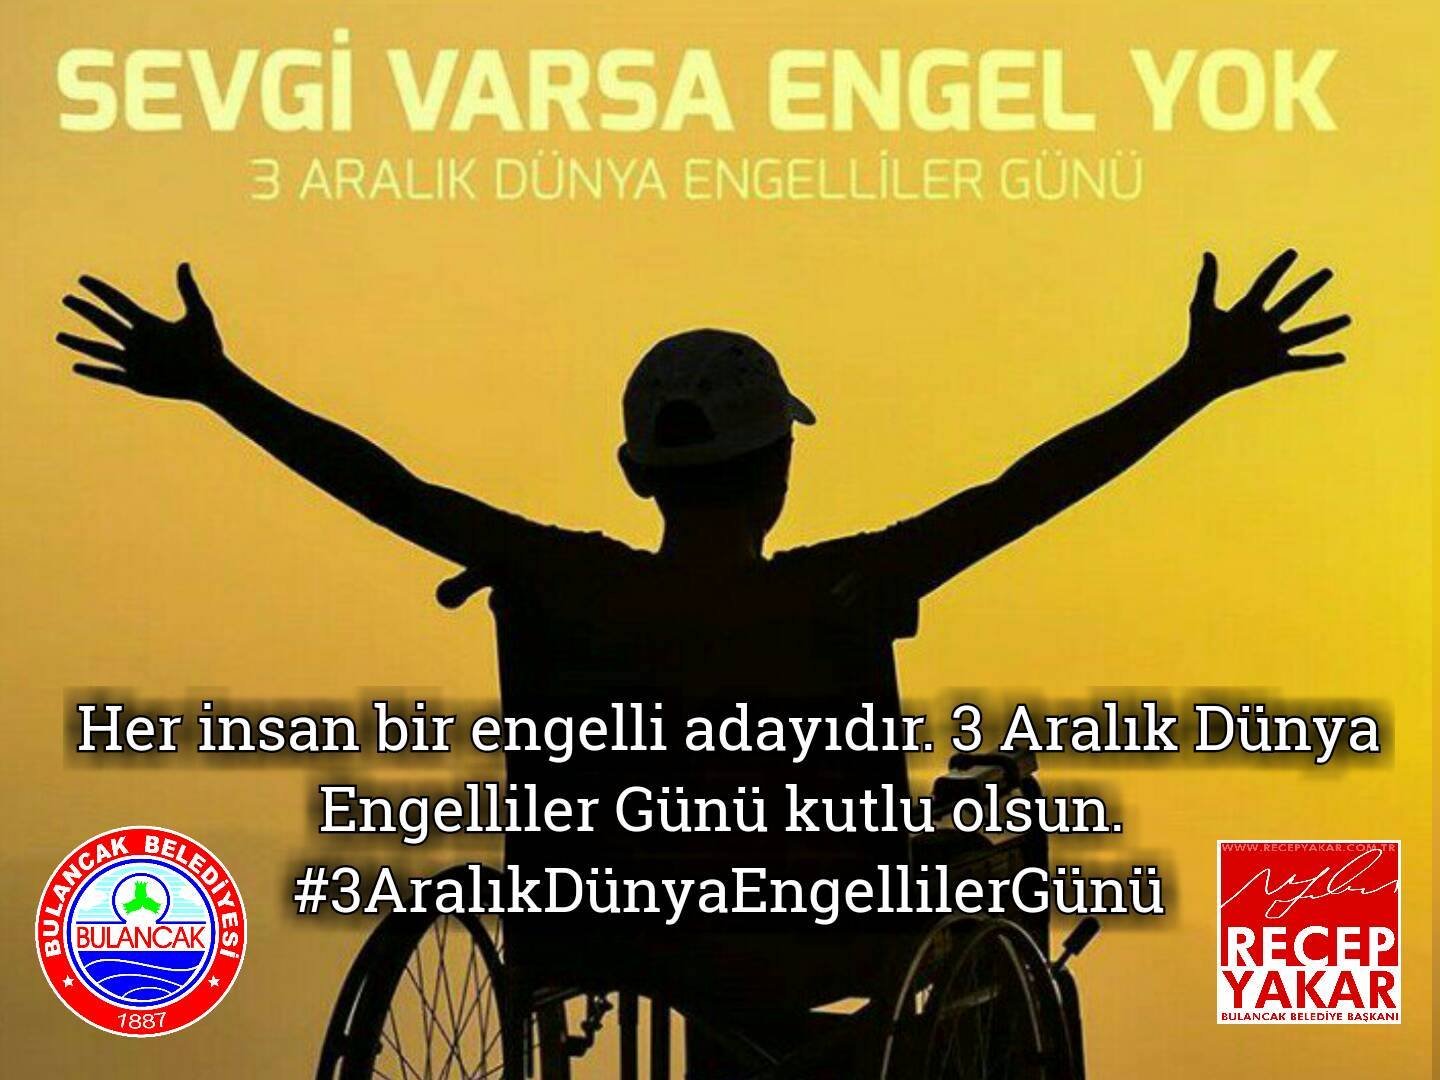 Başkan Recep Yakar’dan 3 Aralık Dünya Engelliler Günü Mesajı